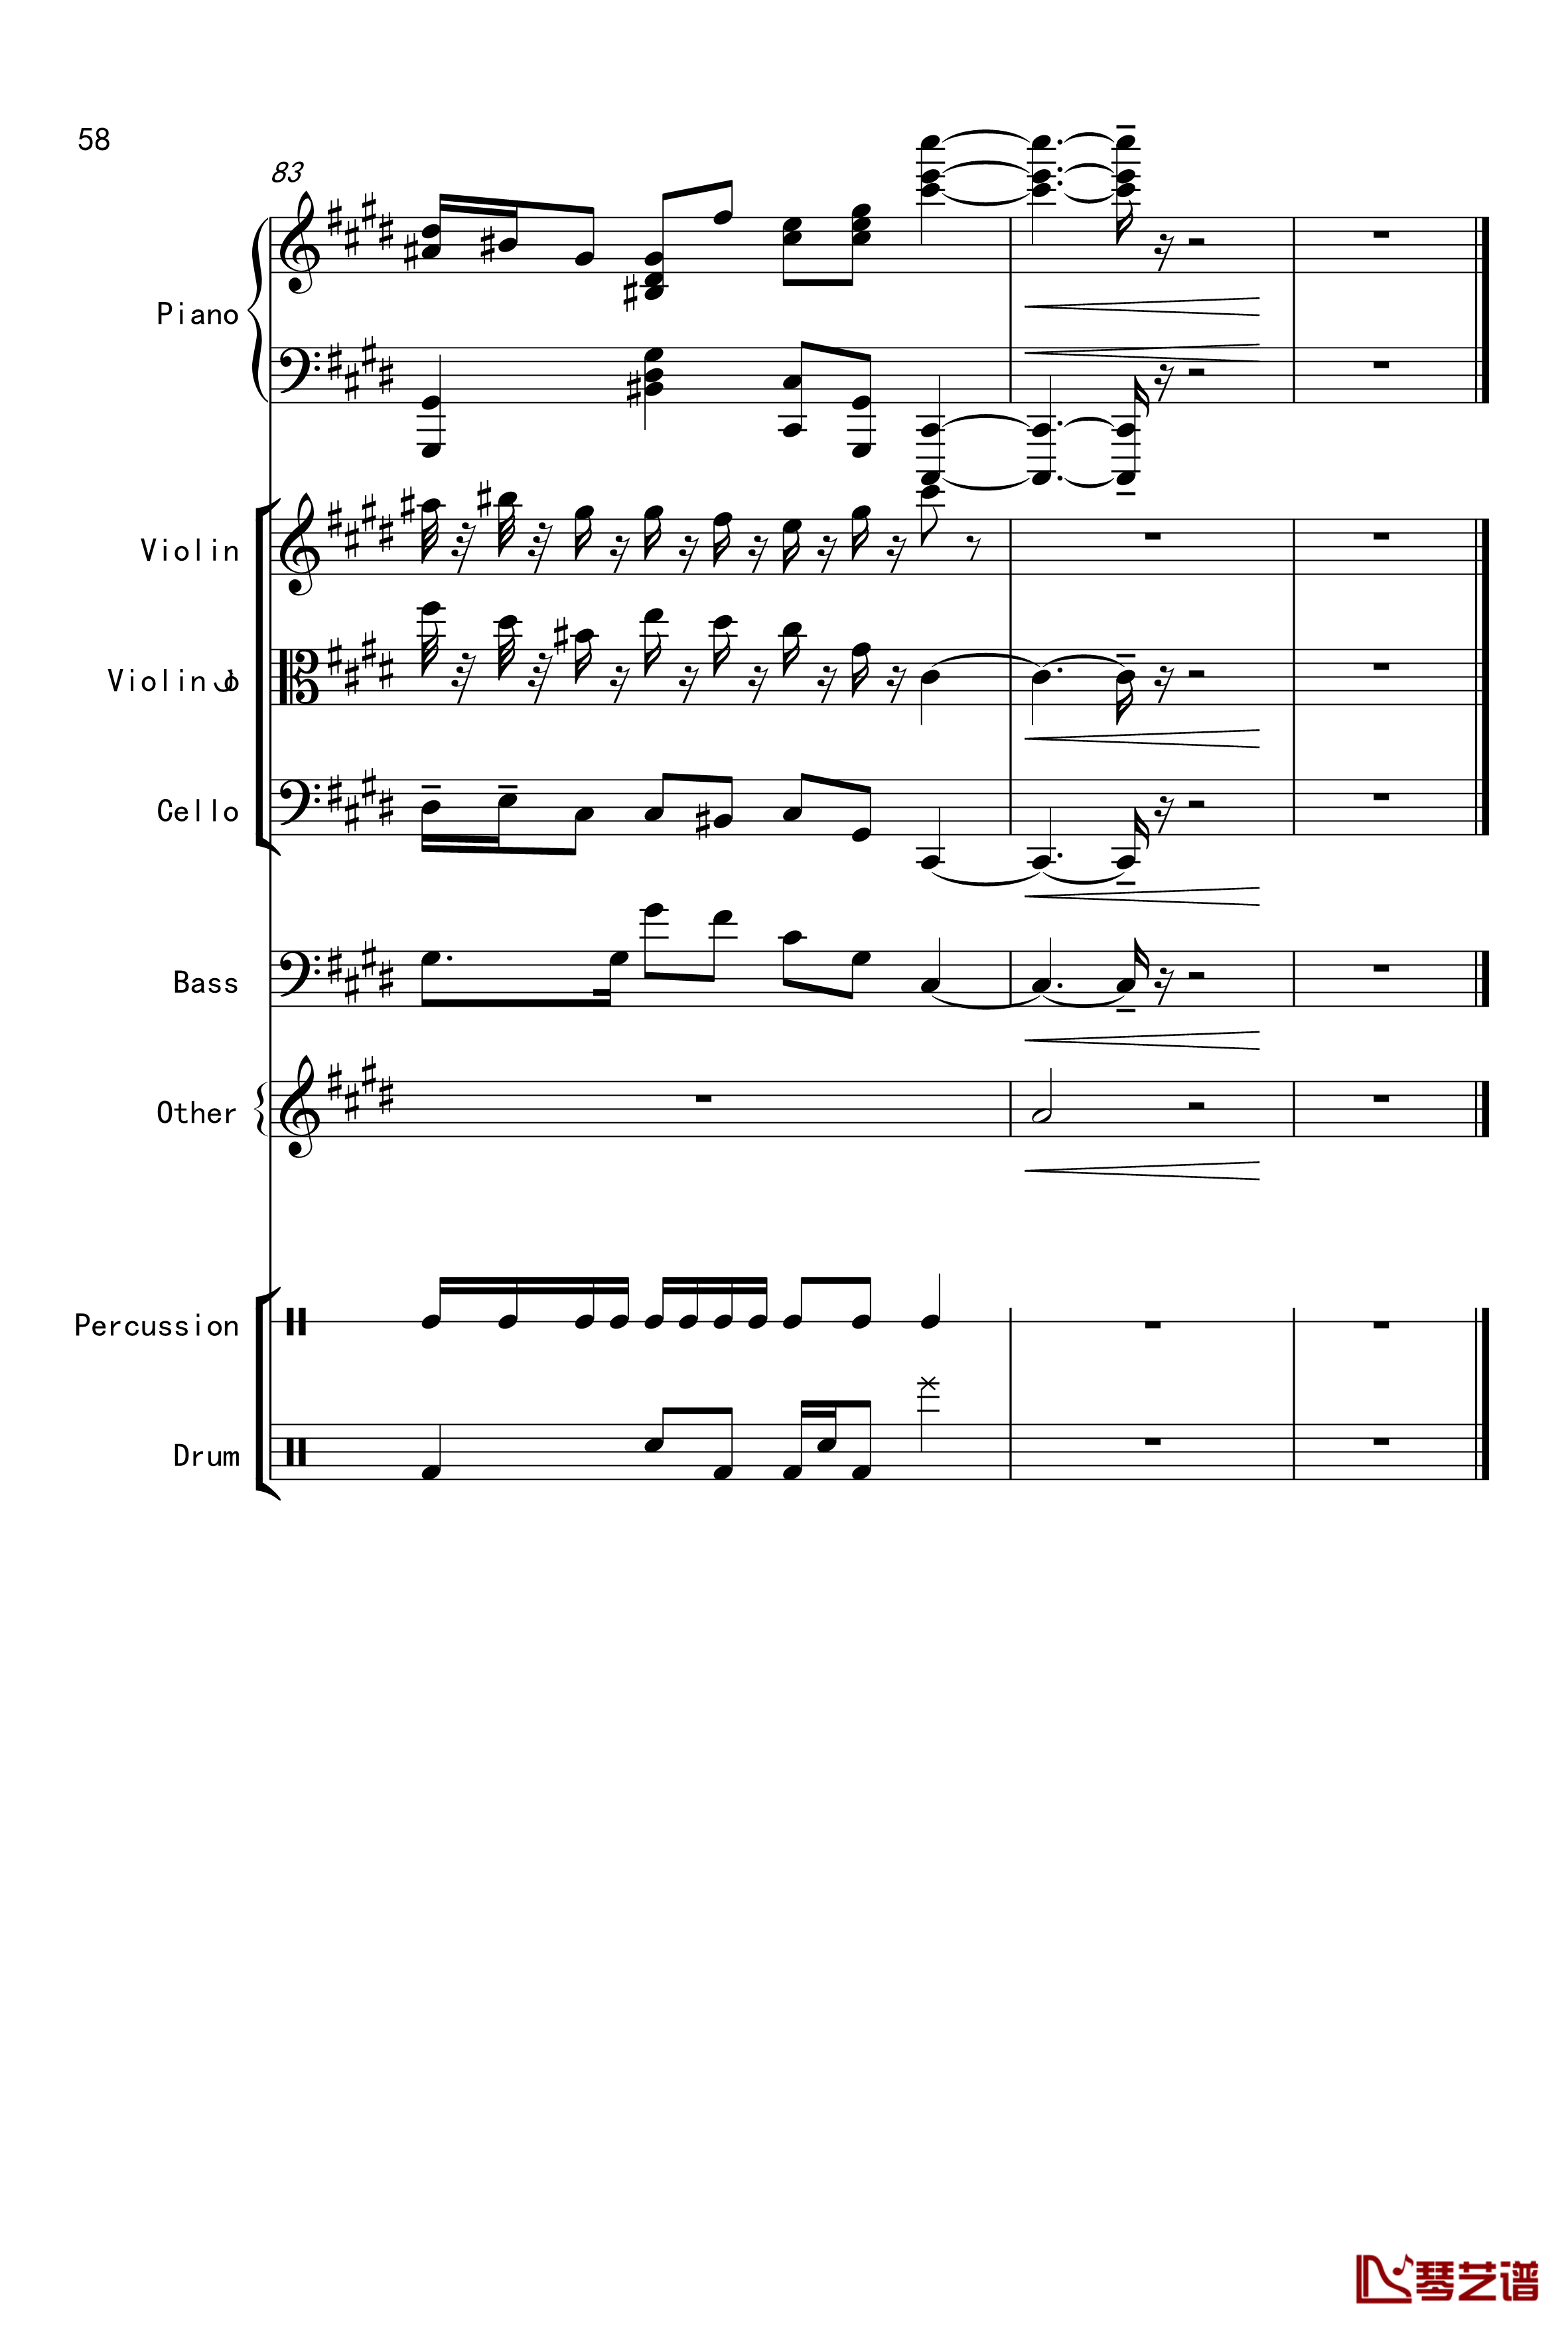 克罗地亚舞曲钢琴谱-Croatian Rhapsody-马克西姆-Maksim·Mrvica58